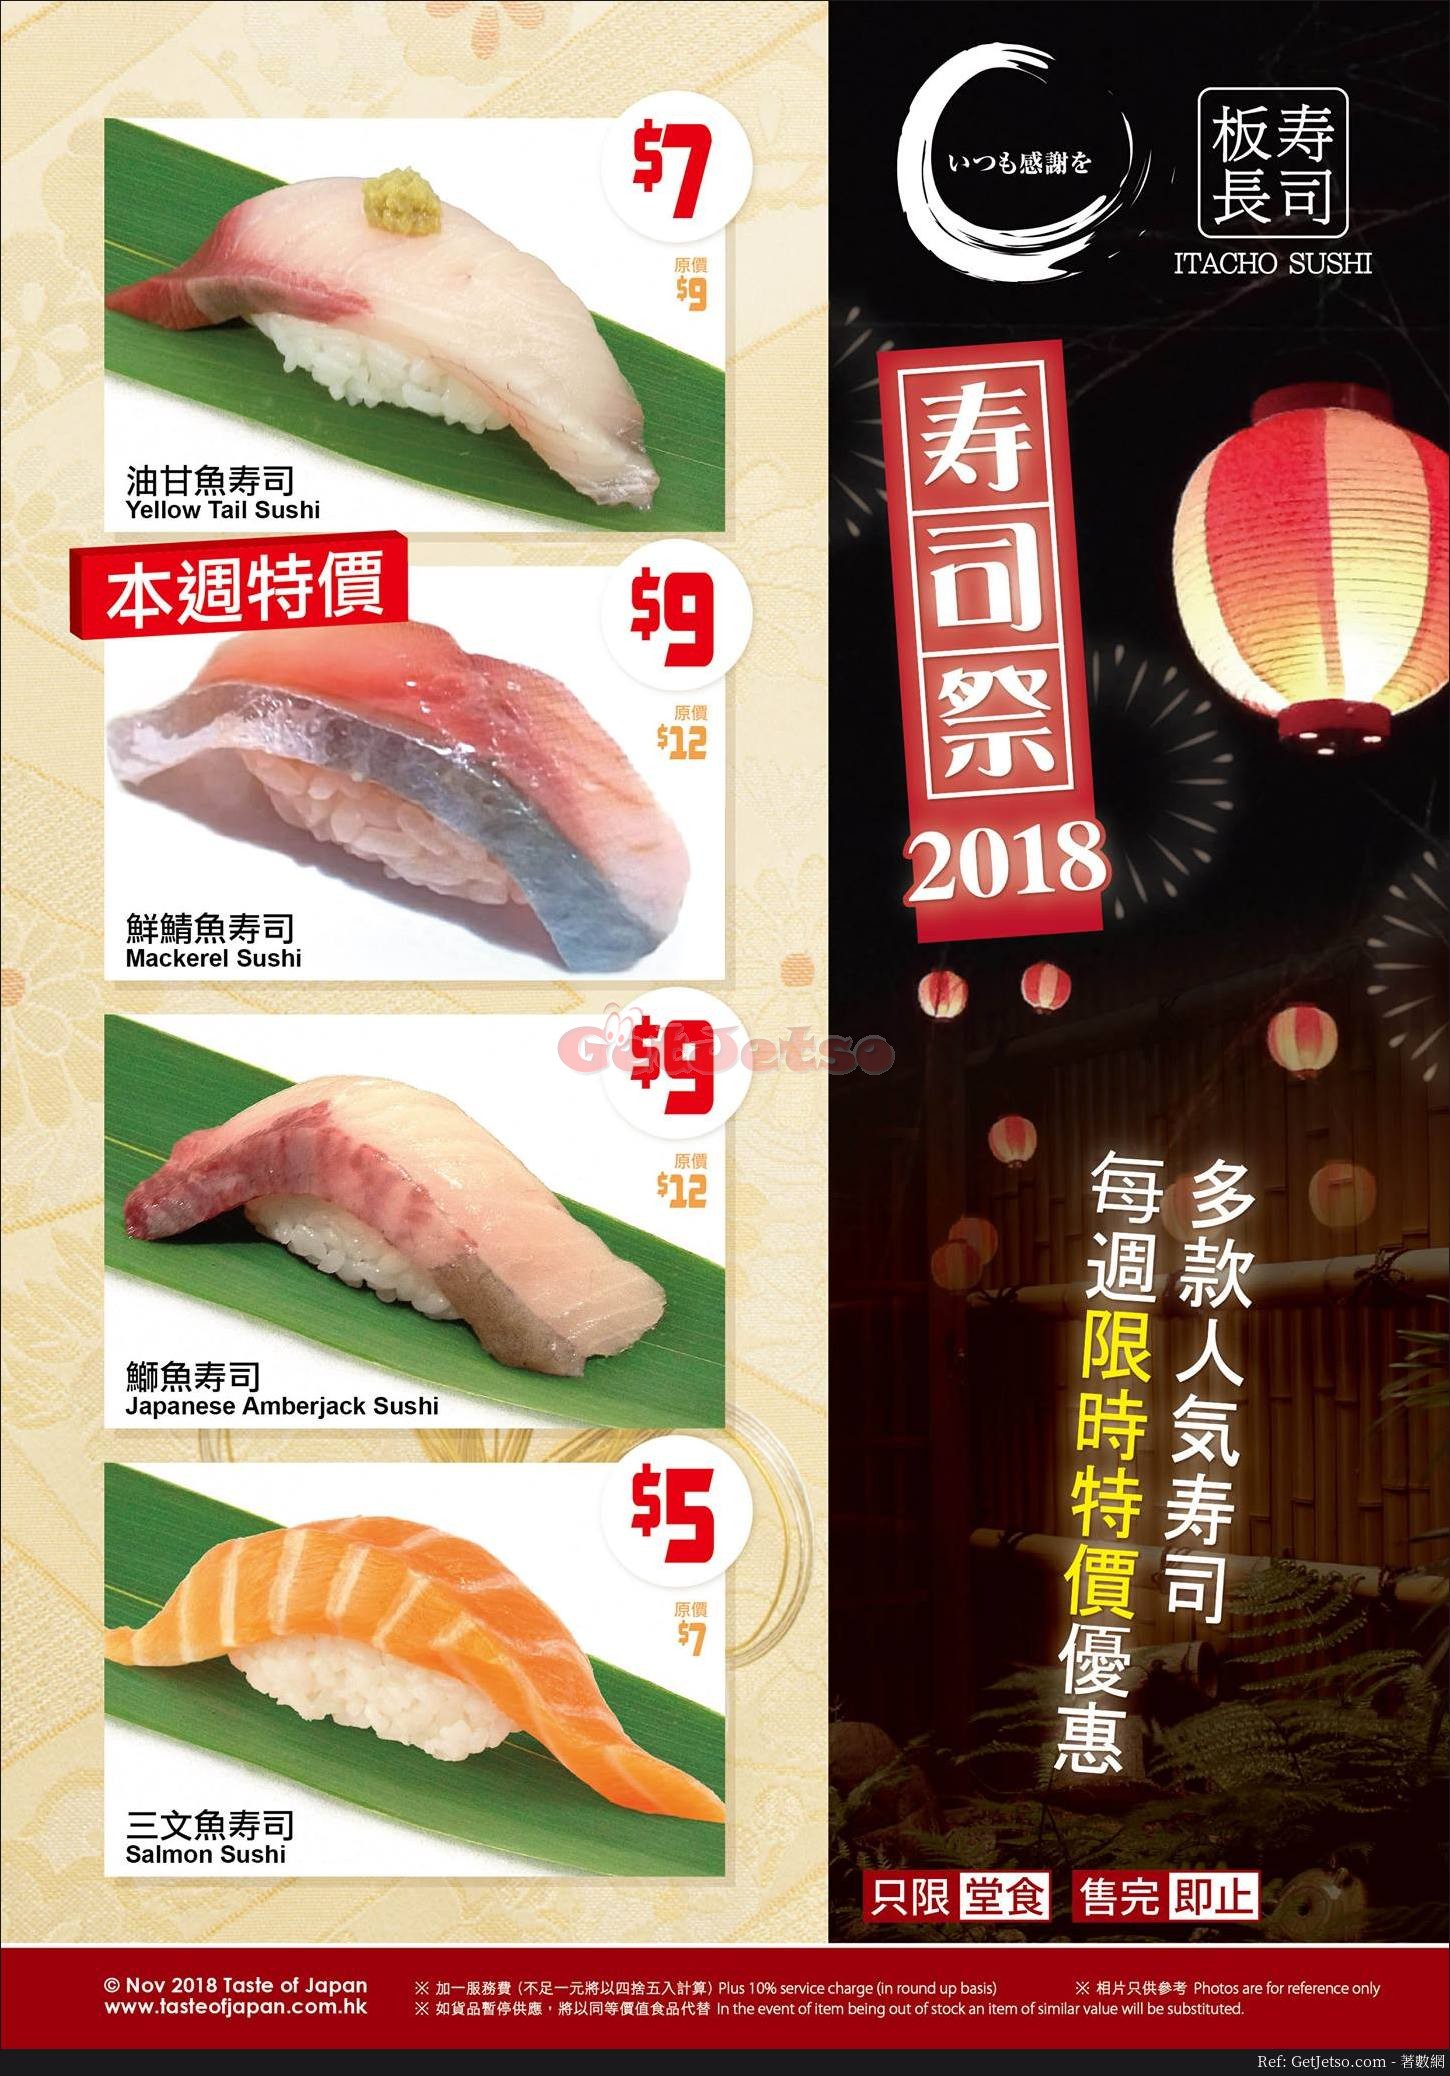 板長寿司每週特價優惠(至18年11月16日)圖片1